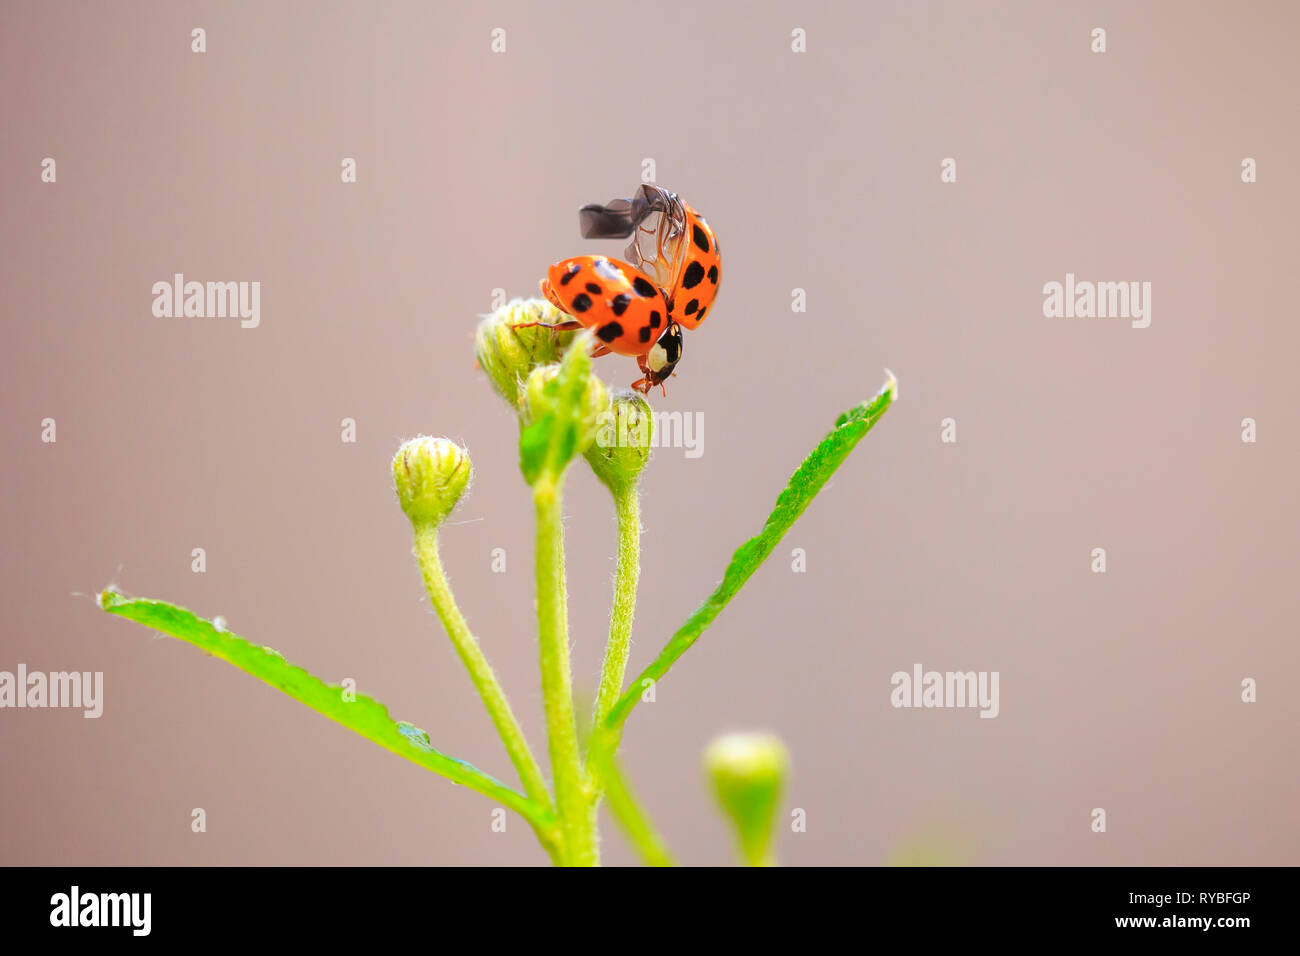 Ladybug o coccinella insetto arrampicata. Fresche, colori vibranti e dalla luce diretta dei raggi solari. Selective soft focus. Foto Stock